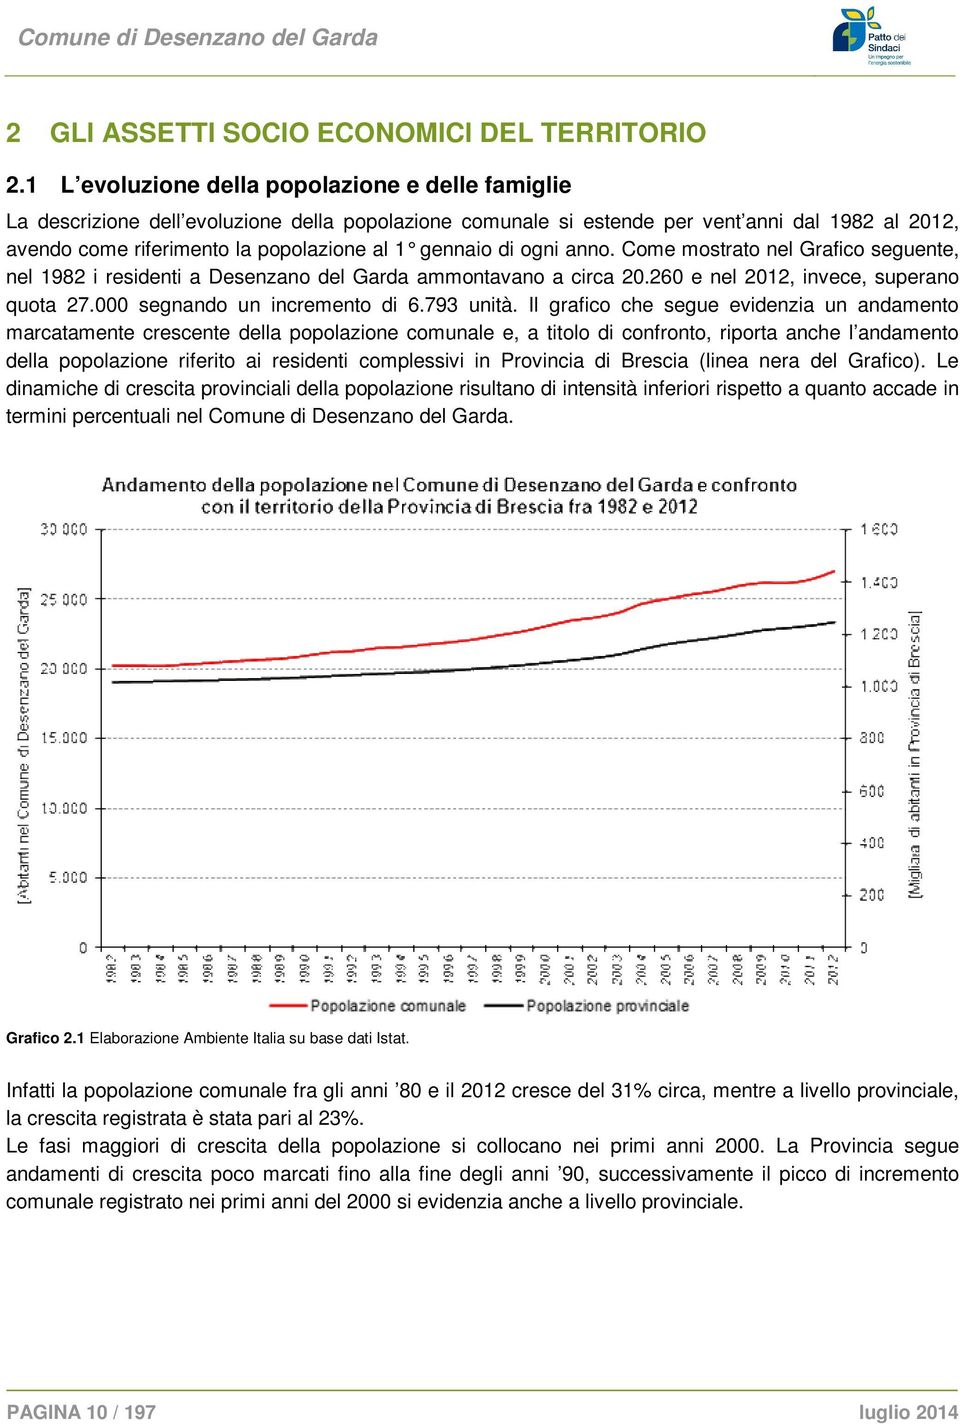 gennai o di ogni anno. Come mostrato nel Grafico seguente, nel 1982 i residenti a Desenzano del Garda ammontavano a circa 20.260 e nel 2012, invece, superano quota 27.000 segnando un incremento di 6.